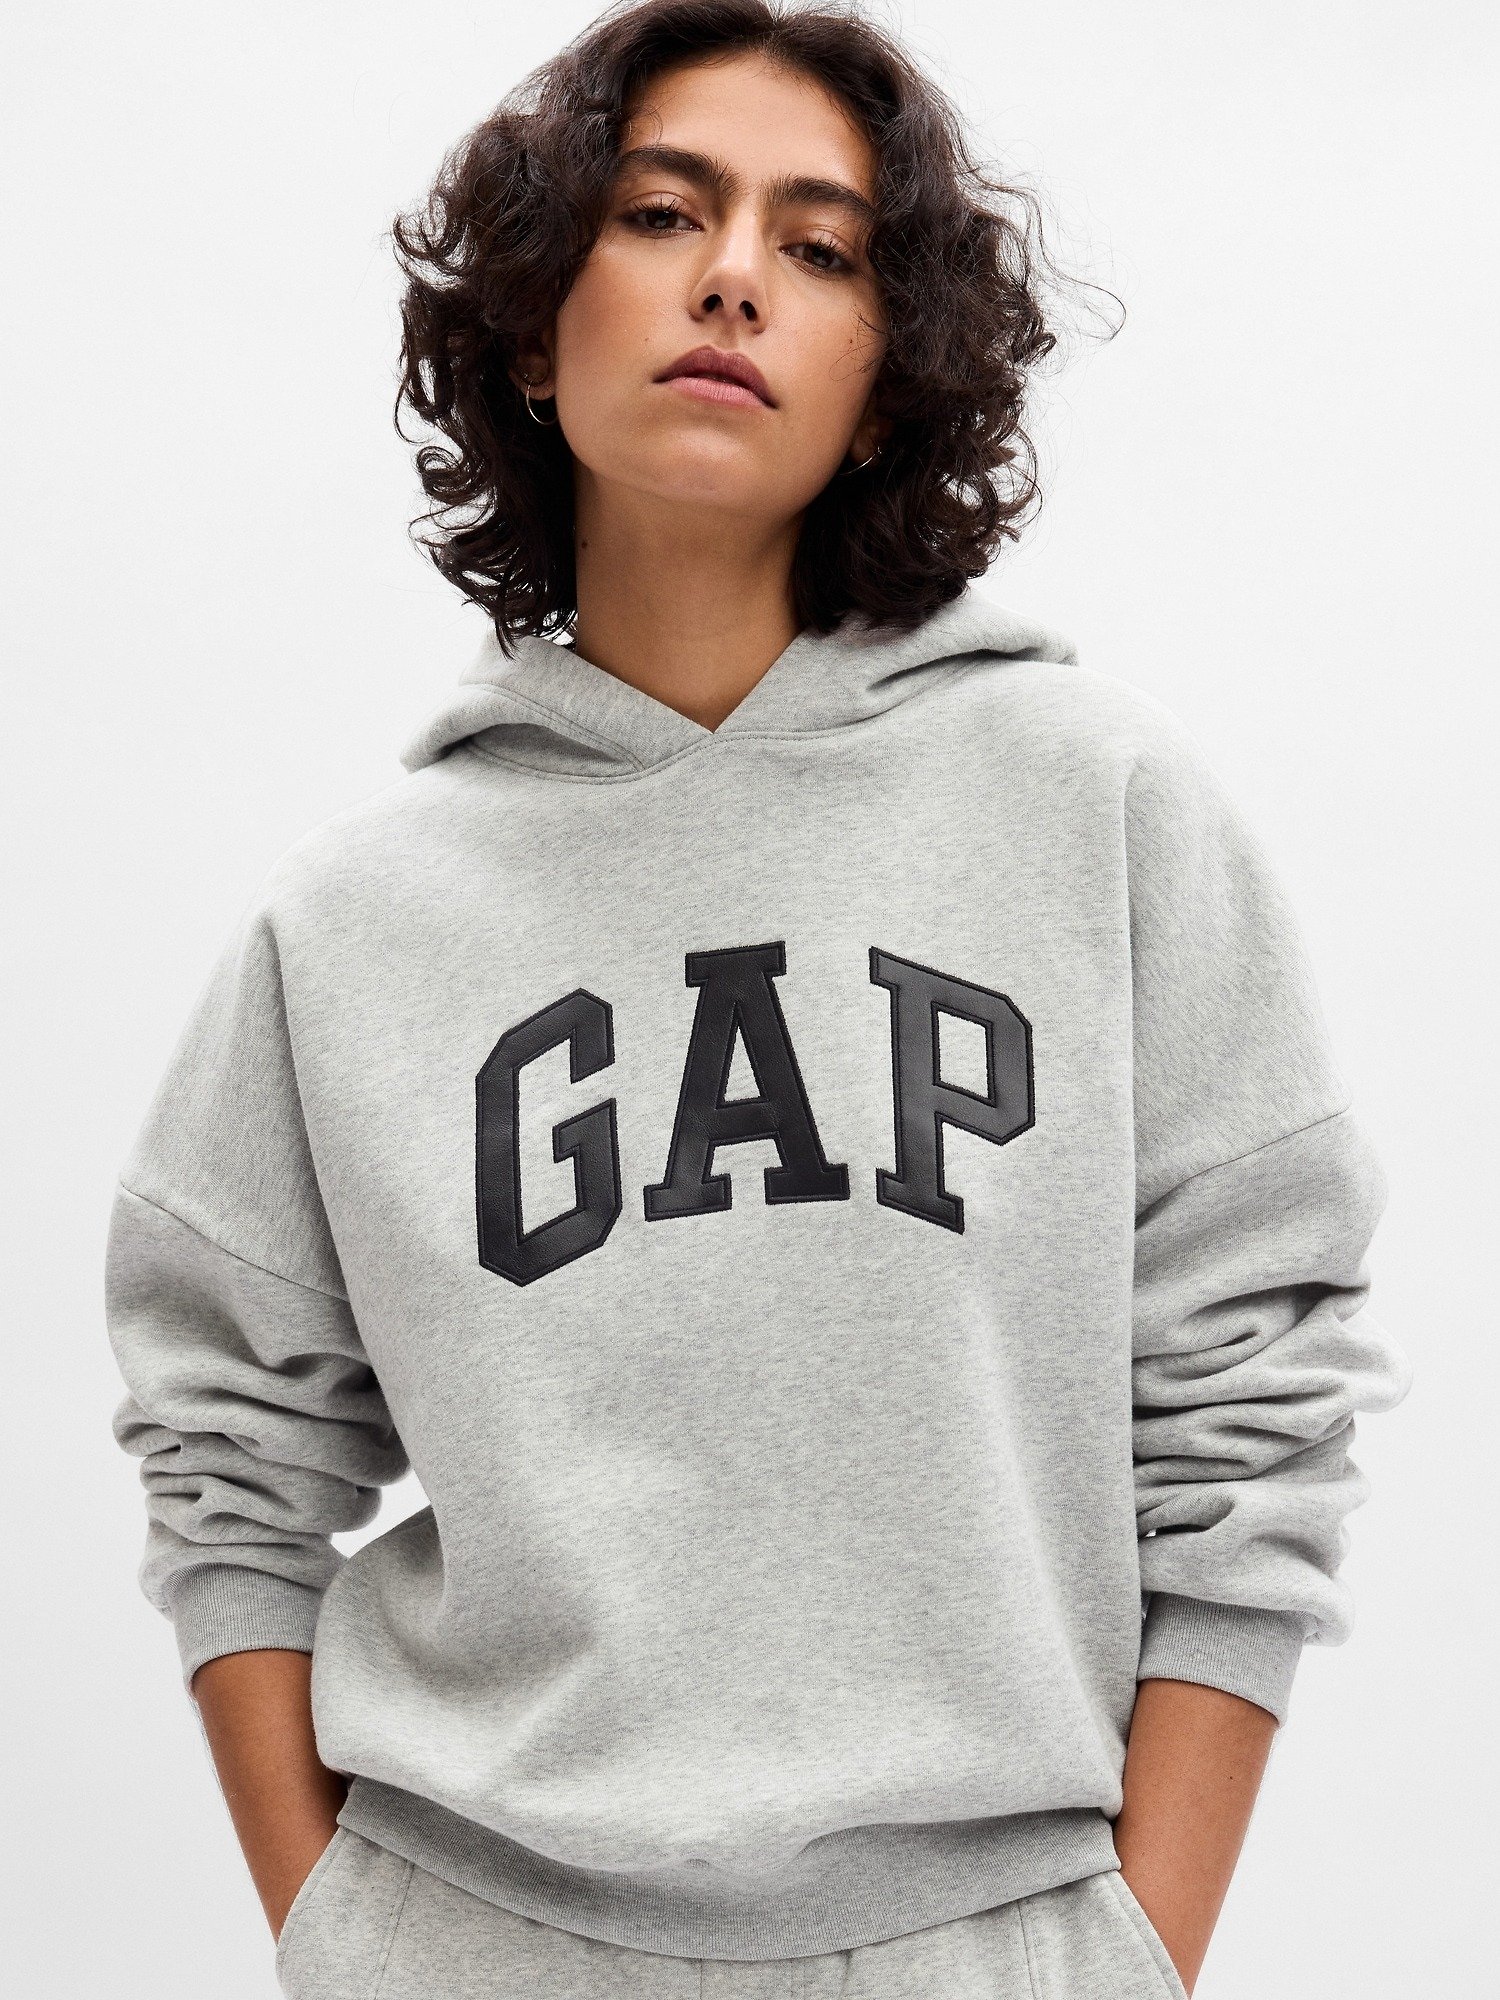 Vintage Soft Gap Logo Sweatshirt product image